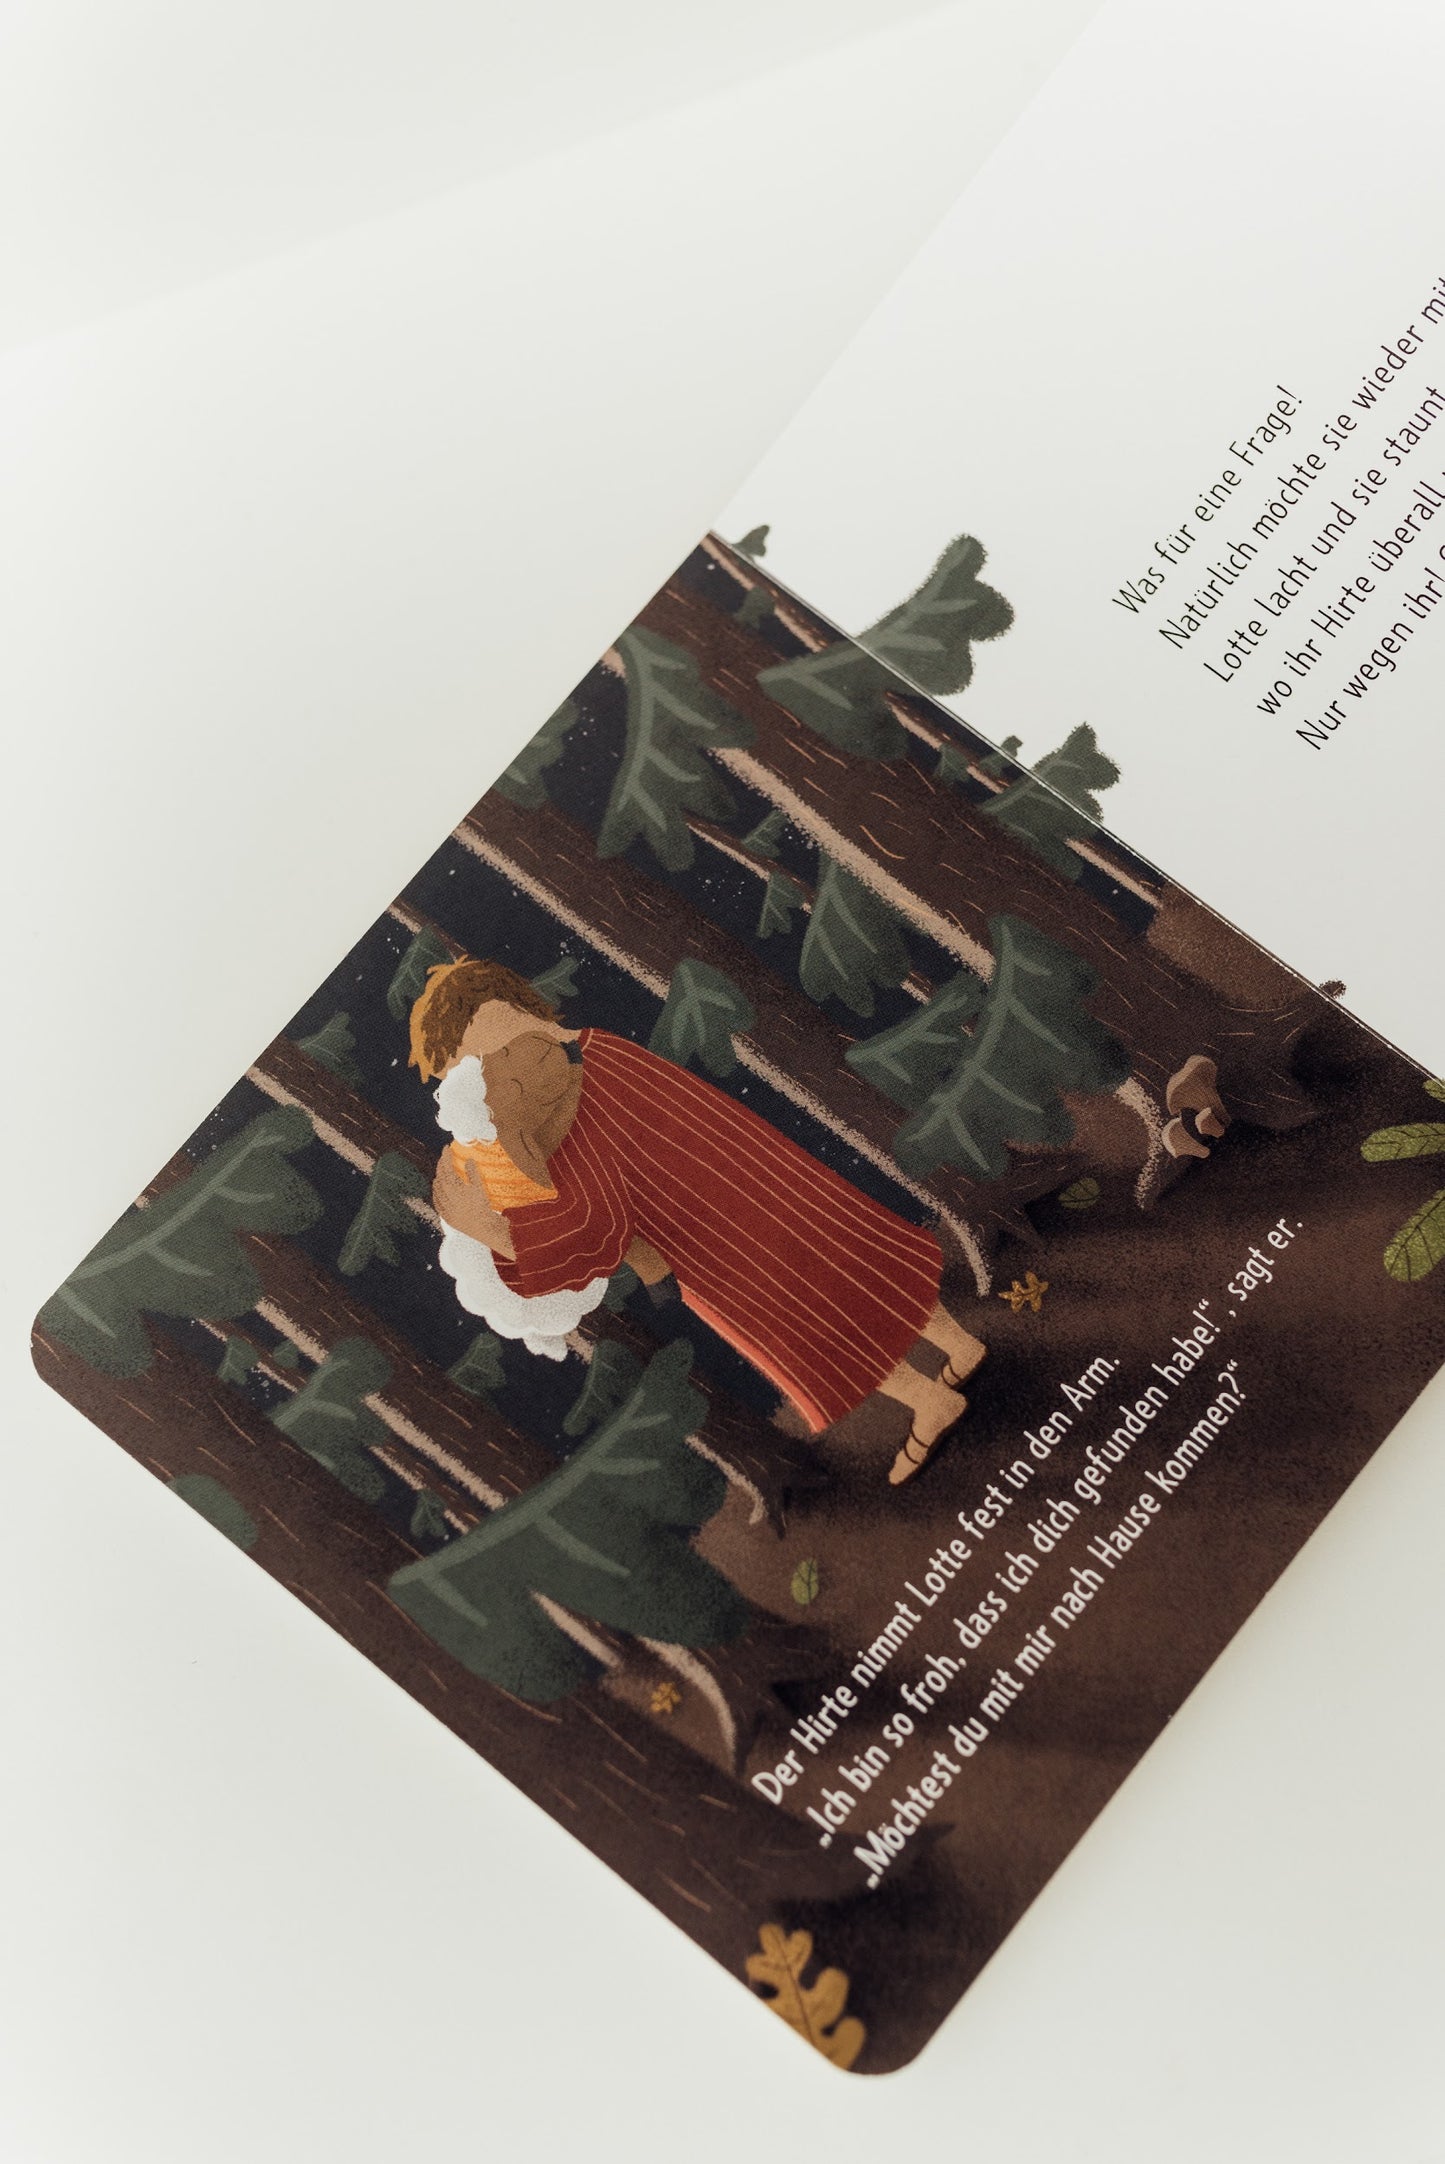 Kinderbuch "Lotte und der gute Hirte"